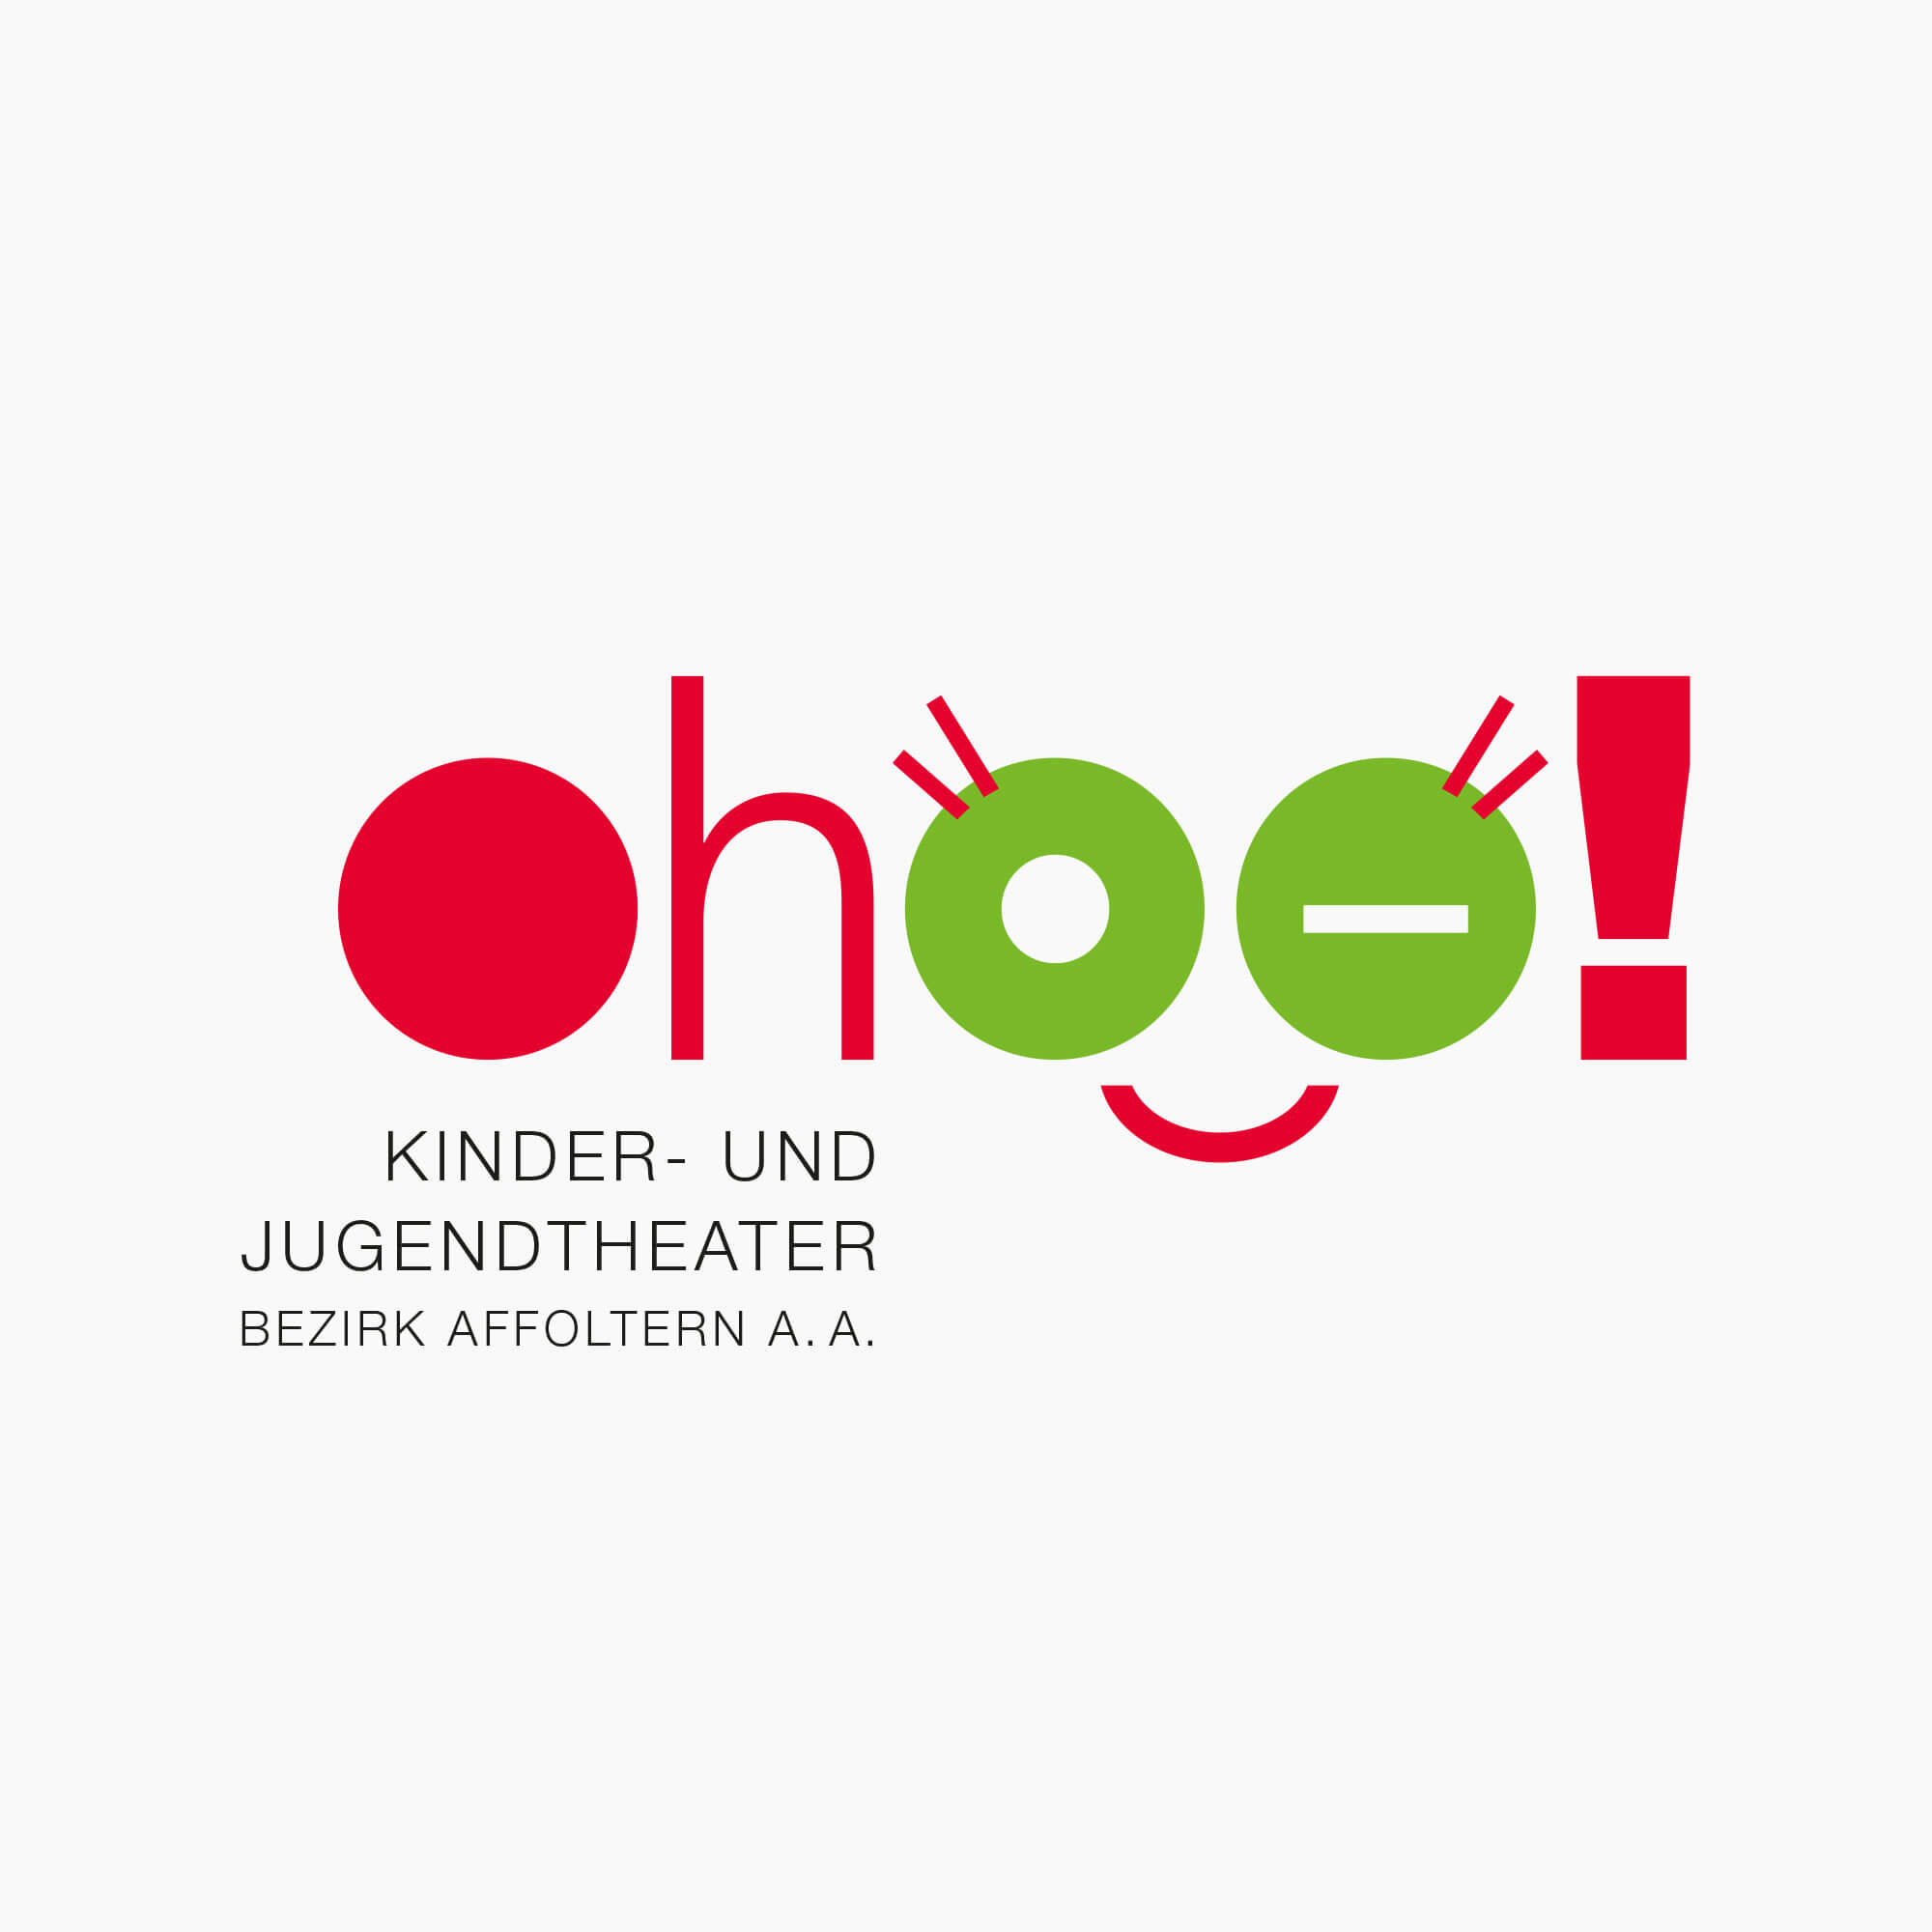 Logo ohoo! Kinder- und Jugendtheater Bezirk Affoltern a.A.